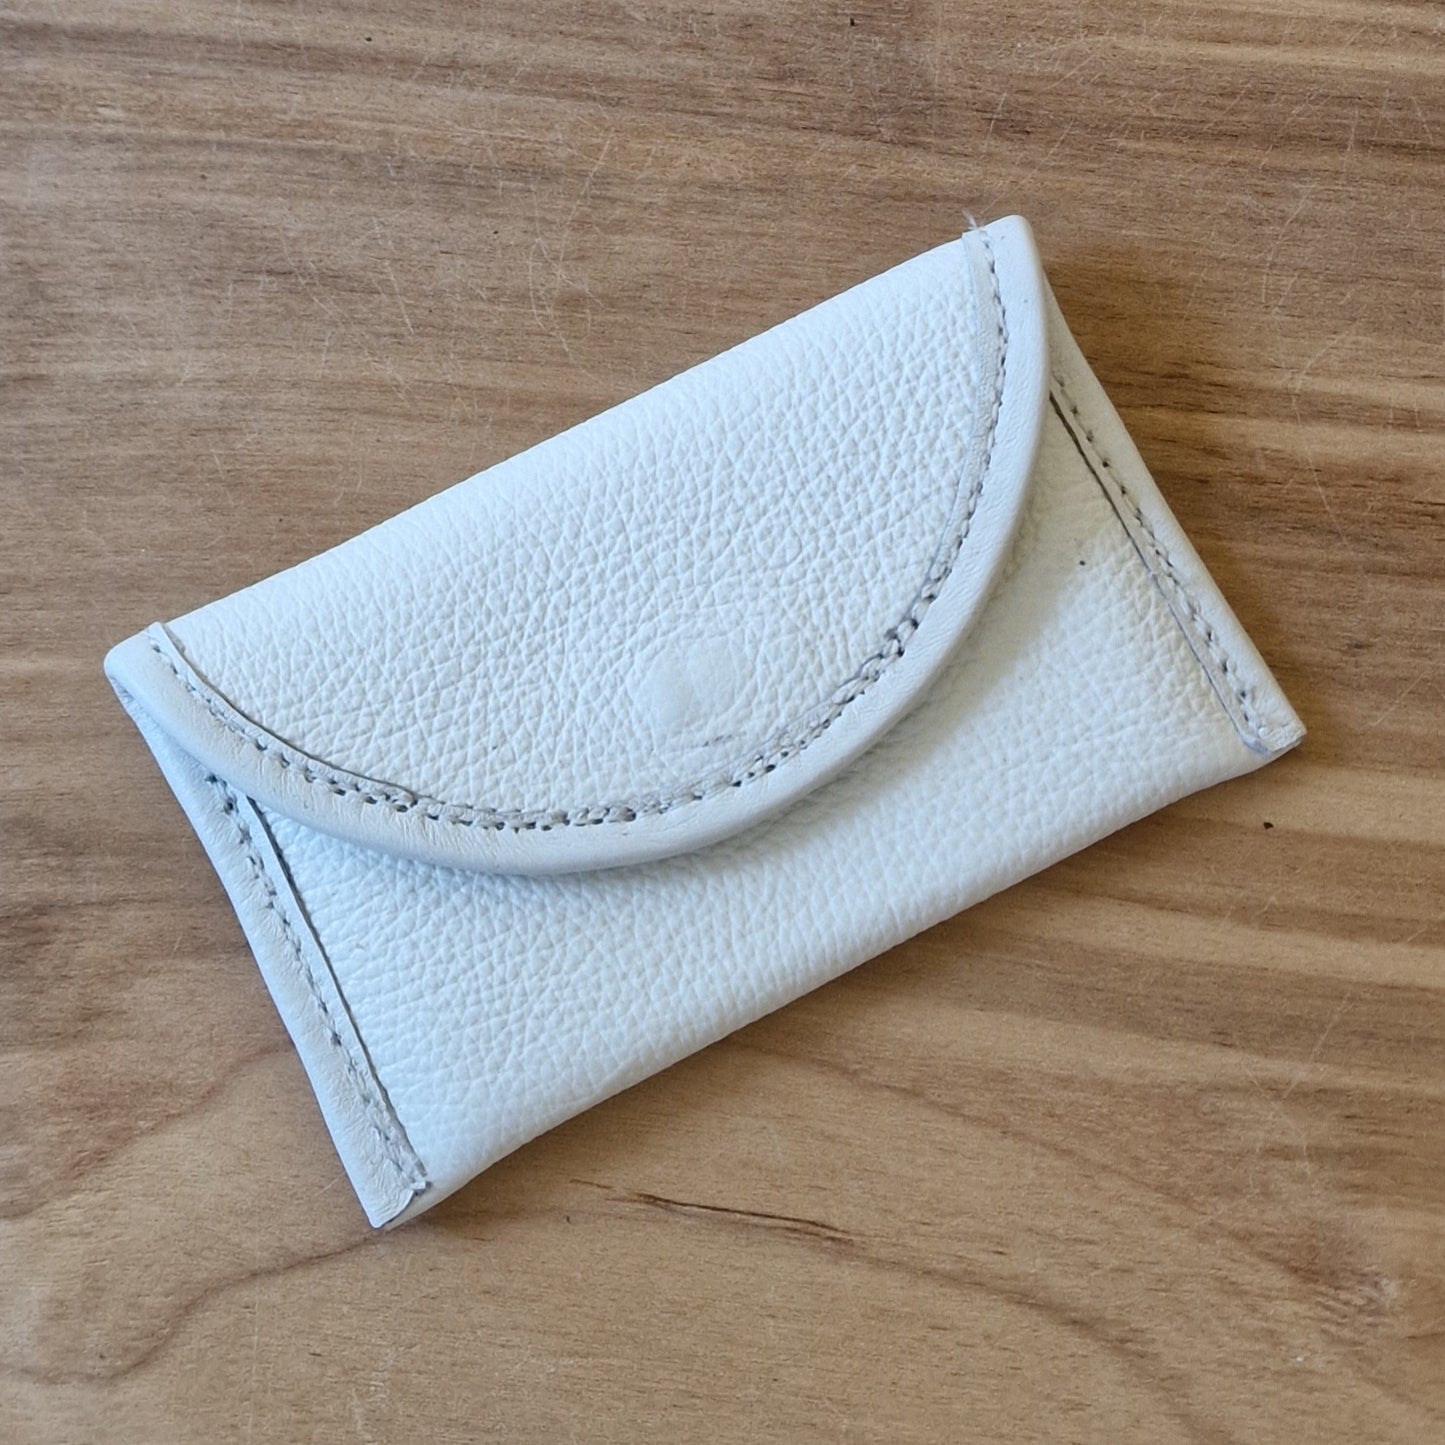 Small Leather Wallet - White (RARA 52)